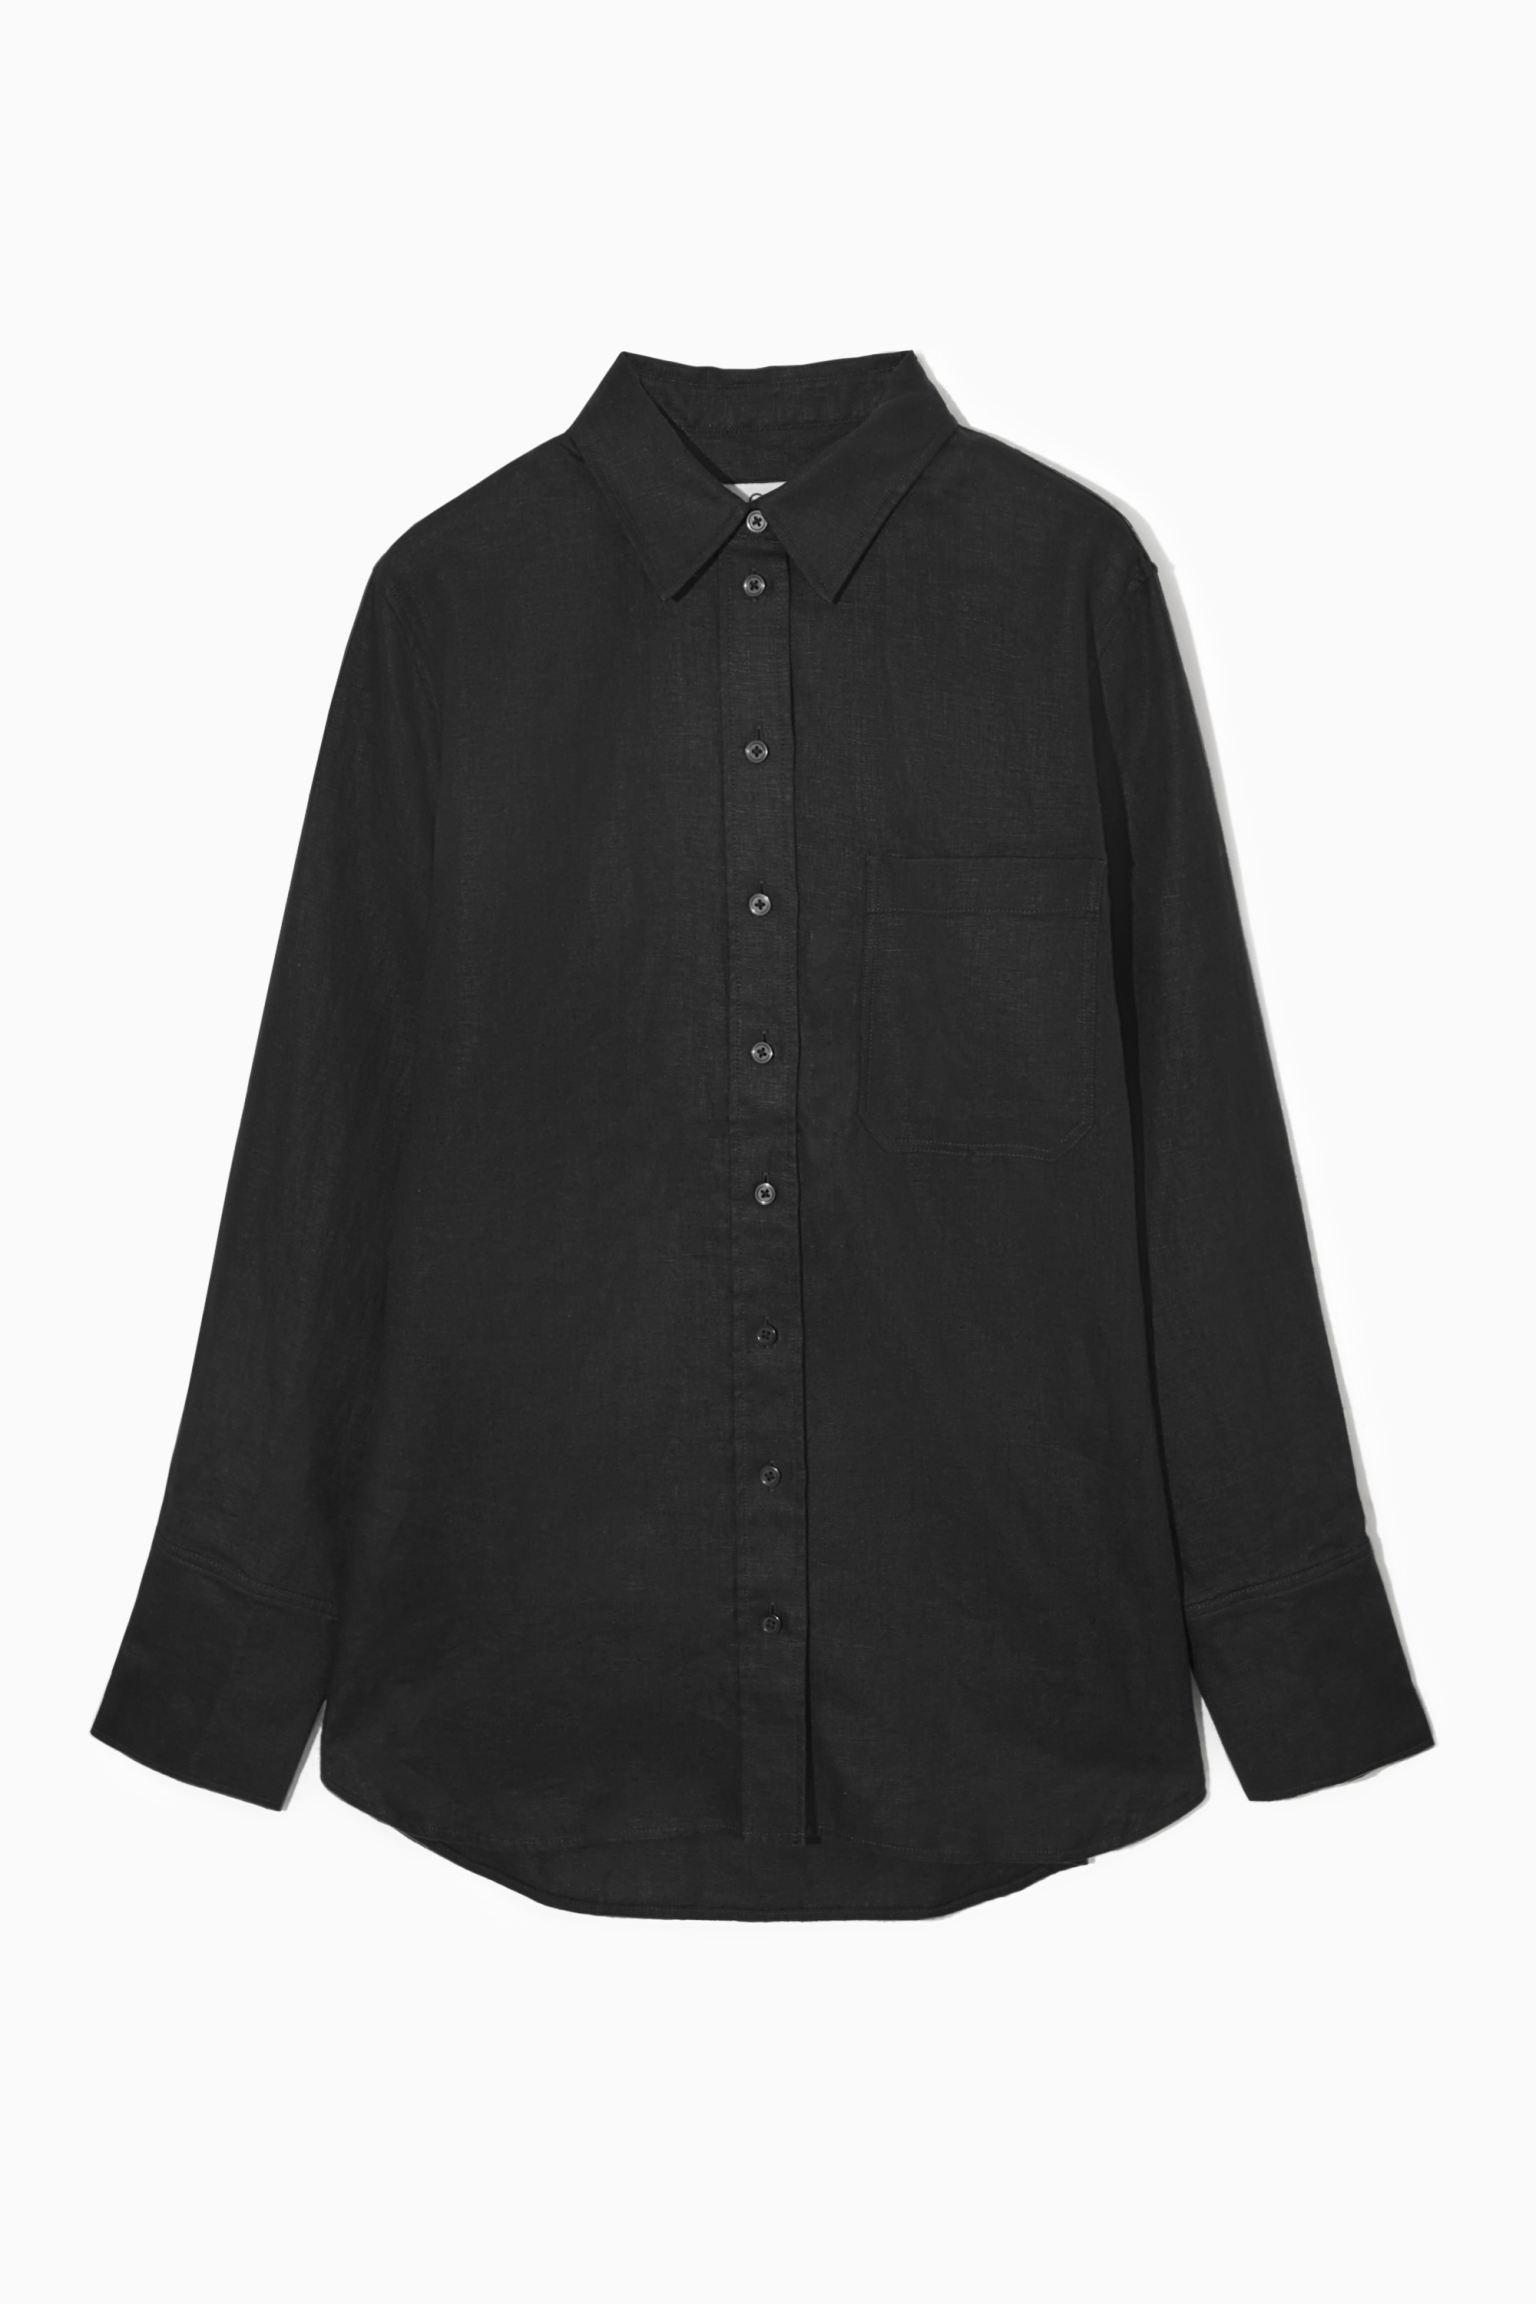 Рубашка женская COS 1163633001 черная 40 EU (доставка из-за рубежа)